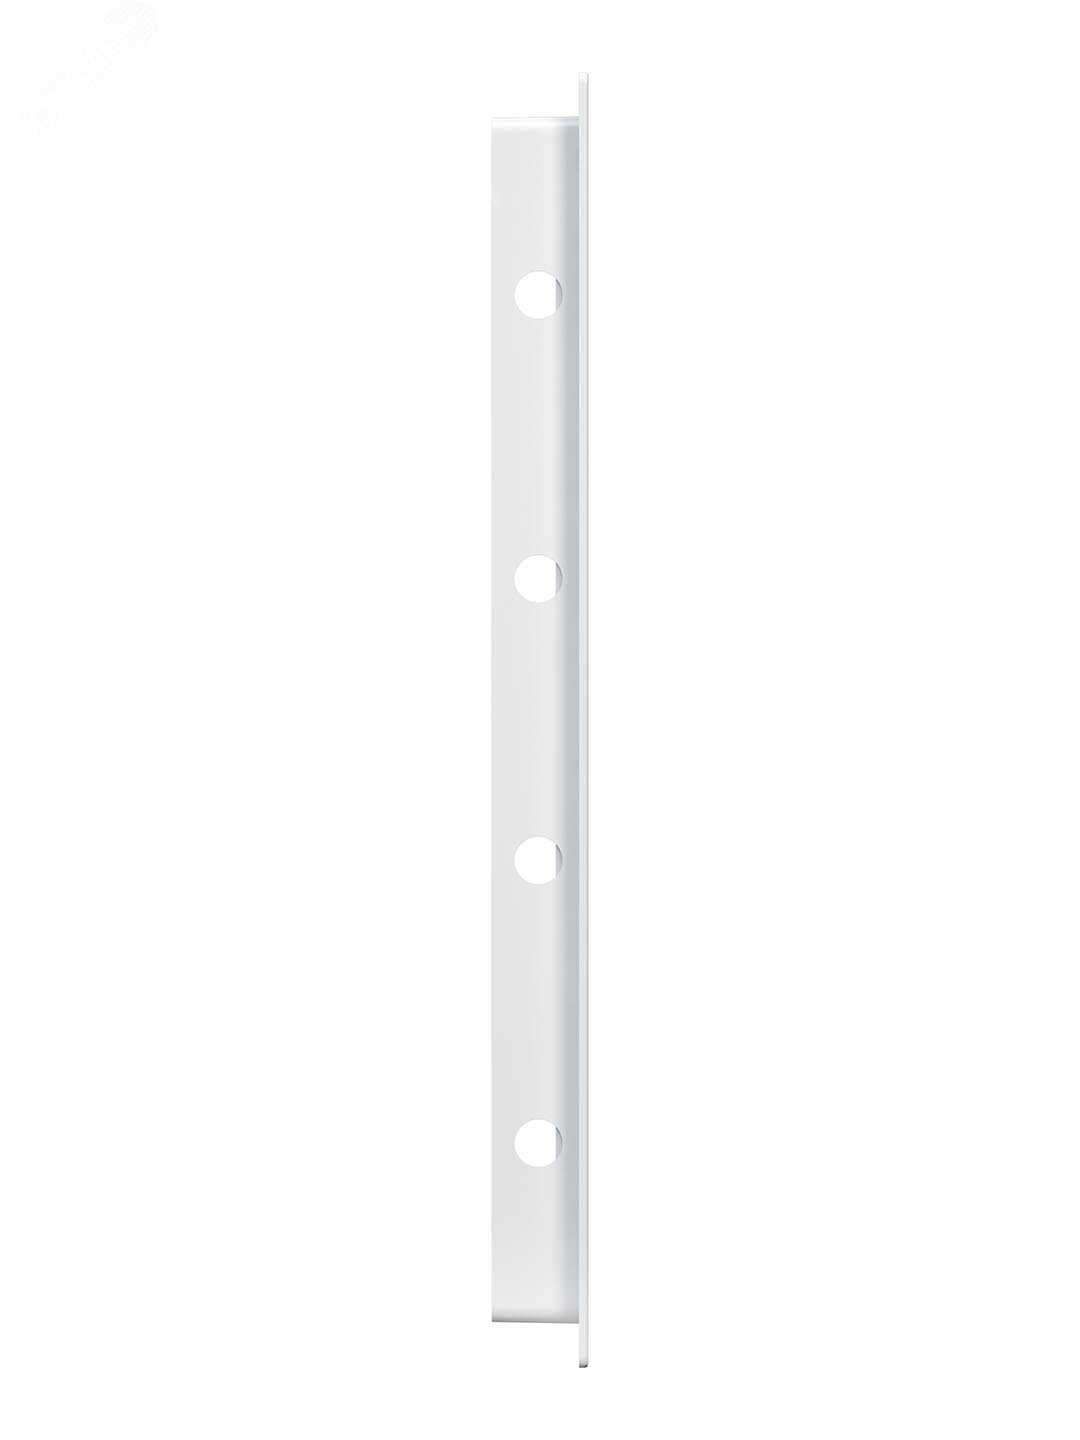 Люк-дверца ревизионный пластиковый нажимной 172х322 с фланцем 150х300 L1530N EVECS - превью 3